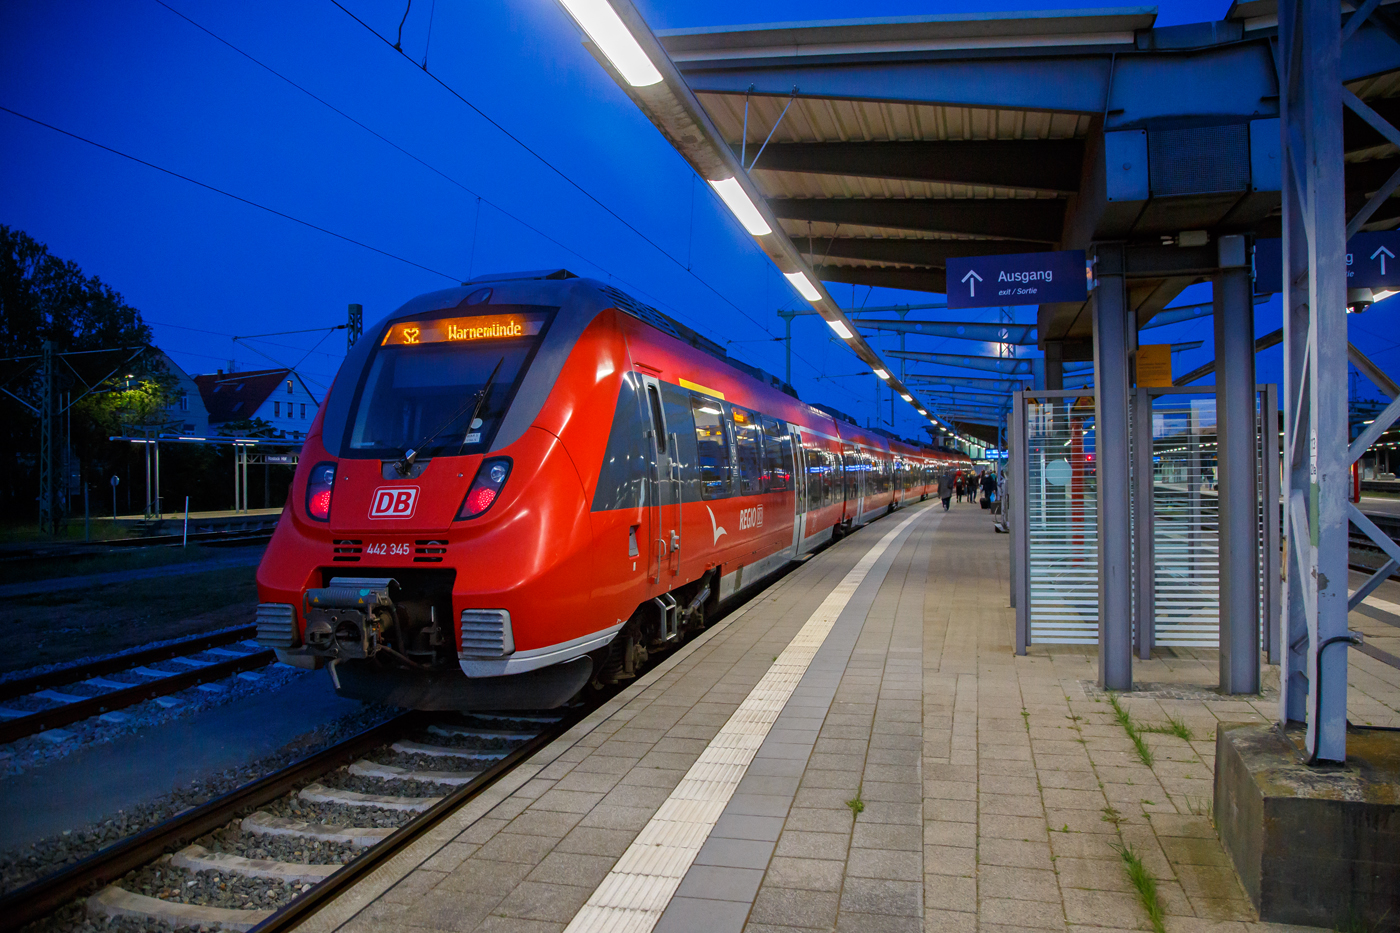 Zwei gekuppelte fnfteilige Bombardier Talent 2 (442 345 / 442 845 und ein weiterer) der DB Regio Nordost als S-Bahn Rostock der Linie S2 (Gstrow – Schwaan - Rostock Hauptbahnhof - Warnemnde), stehen am Abend (21.40 Uhr) des 15 Mai 2022 im Hauptbahnhof Rostock zu Weiterfahrt bereit.

Die S-Bahn Rostock, ursprnglich als Stadtbahn Rostock bezeichnet, ist eine S-Bahn in der mecklenburgischen Hansestadt Rostock. Sie besteht aus drei Linien mit insgesamt rund 90 km Lnge. Die Linie S1 vom Hauptbahnhof nach Warnemnde verkehrt innerhalb des Rostocker Stadtgebiets. Dort wurde bereits in den 1970er Jahren der S-Bahn-Betrieb aufgenommen. Spter wurden die Linien zum Seehafen und in die sdlich gelegene Stadt Gstrow ber Schwaan in das S-Bahn-Netz einbezogen. Im Jahr 2012 wurde die Linie zum Seehafen eingestellt, dafr gehrt seitdem die Verbindung nach Gstrow ber Laage als Linie S3 zur Rostocker S-Bahn. Bis 2014 wurden hauptschlich Wendezge mit Doppelstockwagen eingesetzt. Seitdem fahren auf allen Linien neue Elektrotriebwagen vom Typ Talent 2. Der Verkehr auf den Rostocker S-Bahn-Linien erfolgt, ebenso wie der auf den Regionalbahnlinien, innerhalb des Verkehrsverbundes Warnow (VVW), Betreiber der S-Bahn Rostock ist die DB Regio Nordost.

Auf der Strecke zwischen dem Rostocker Hauptbahnhof und dem Seebad Warnemnde gibt es schon lange einen dichten Vorortverkehr. Tariflich wurde er bereits ab 1923 durch preiswerte Tagesrckfahrkarten begnstigt.